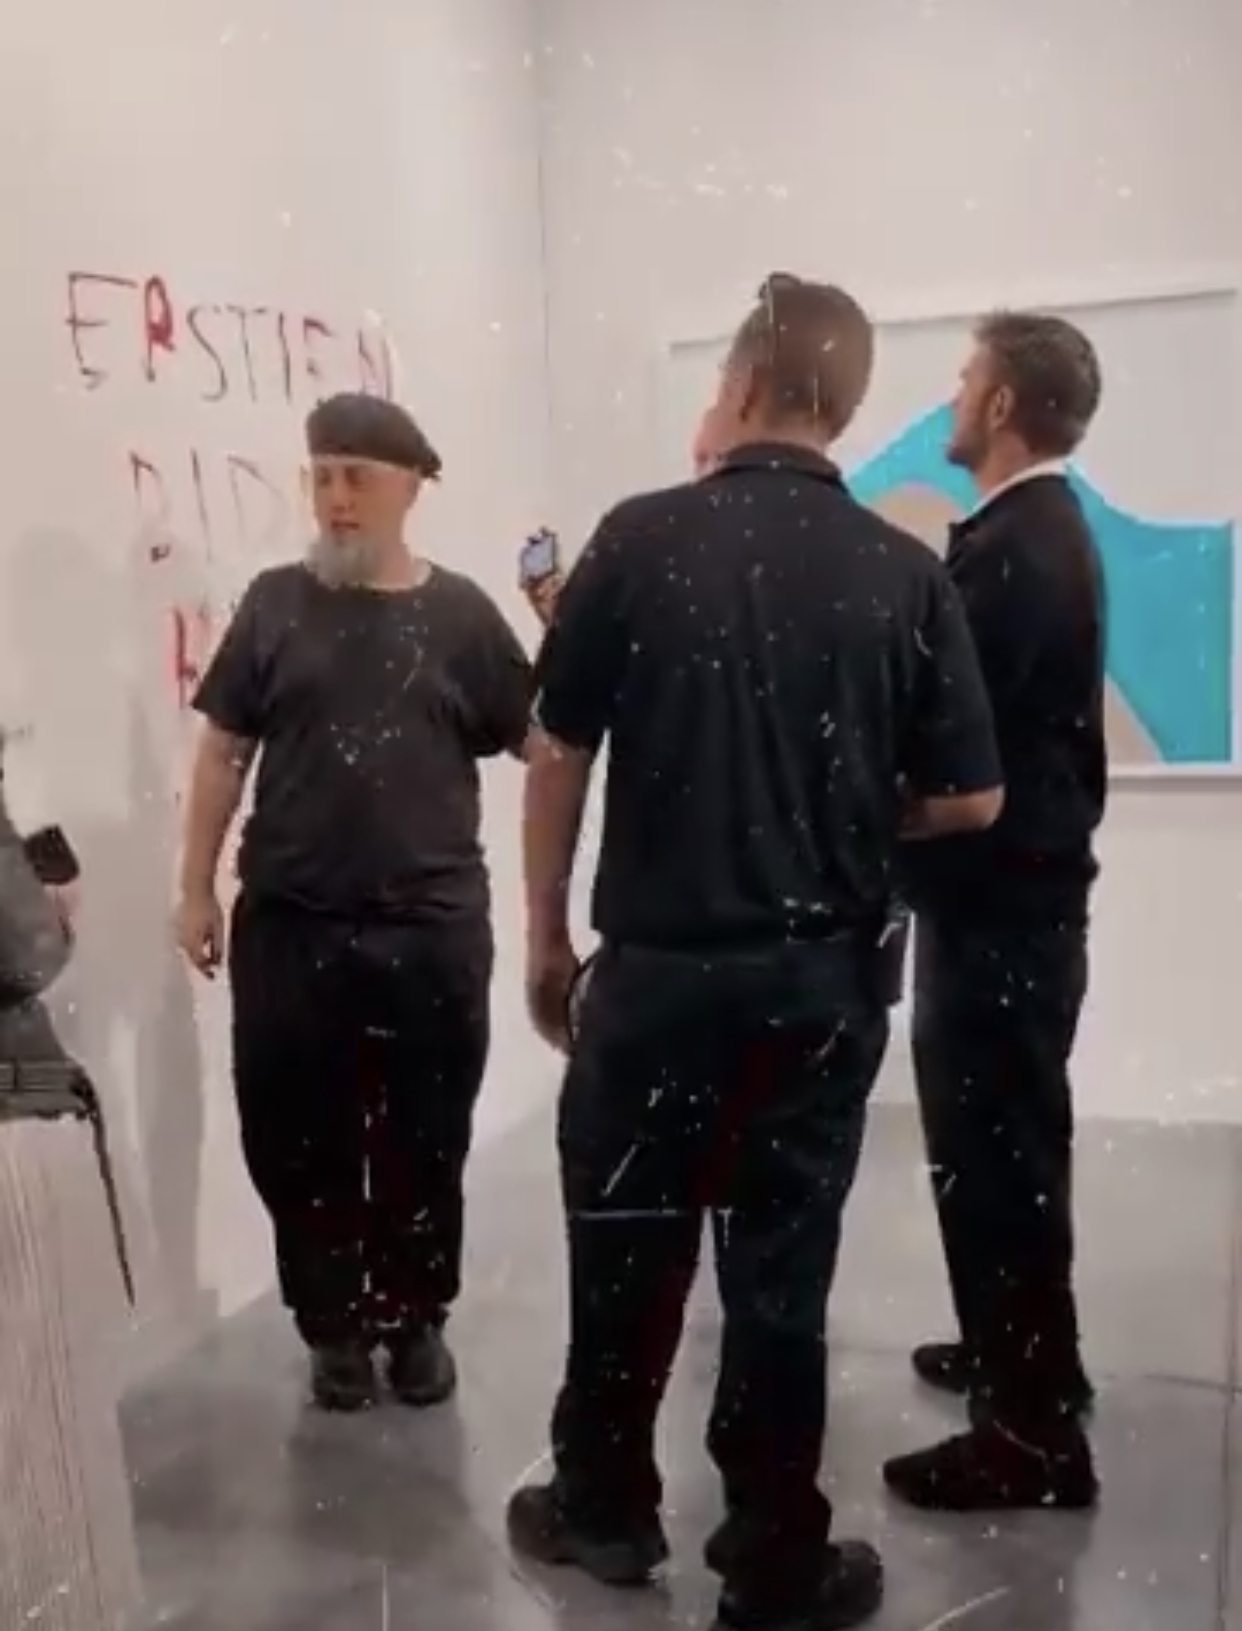 ¡Continúa saga de la banana! Hombre arrestado por vandalismo en galeria Art Basel Miami (Video)